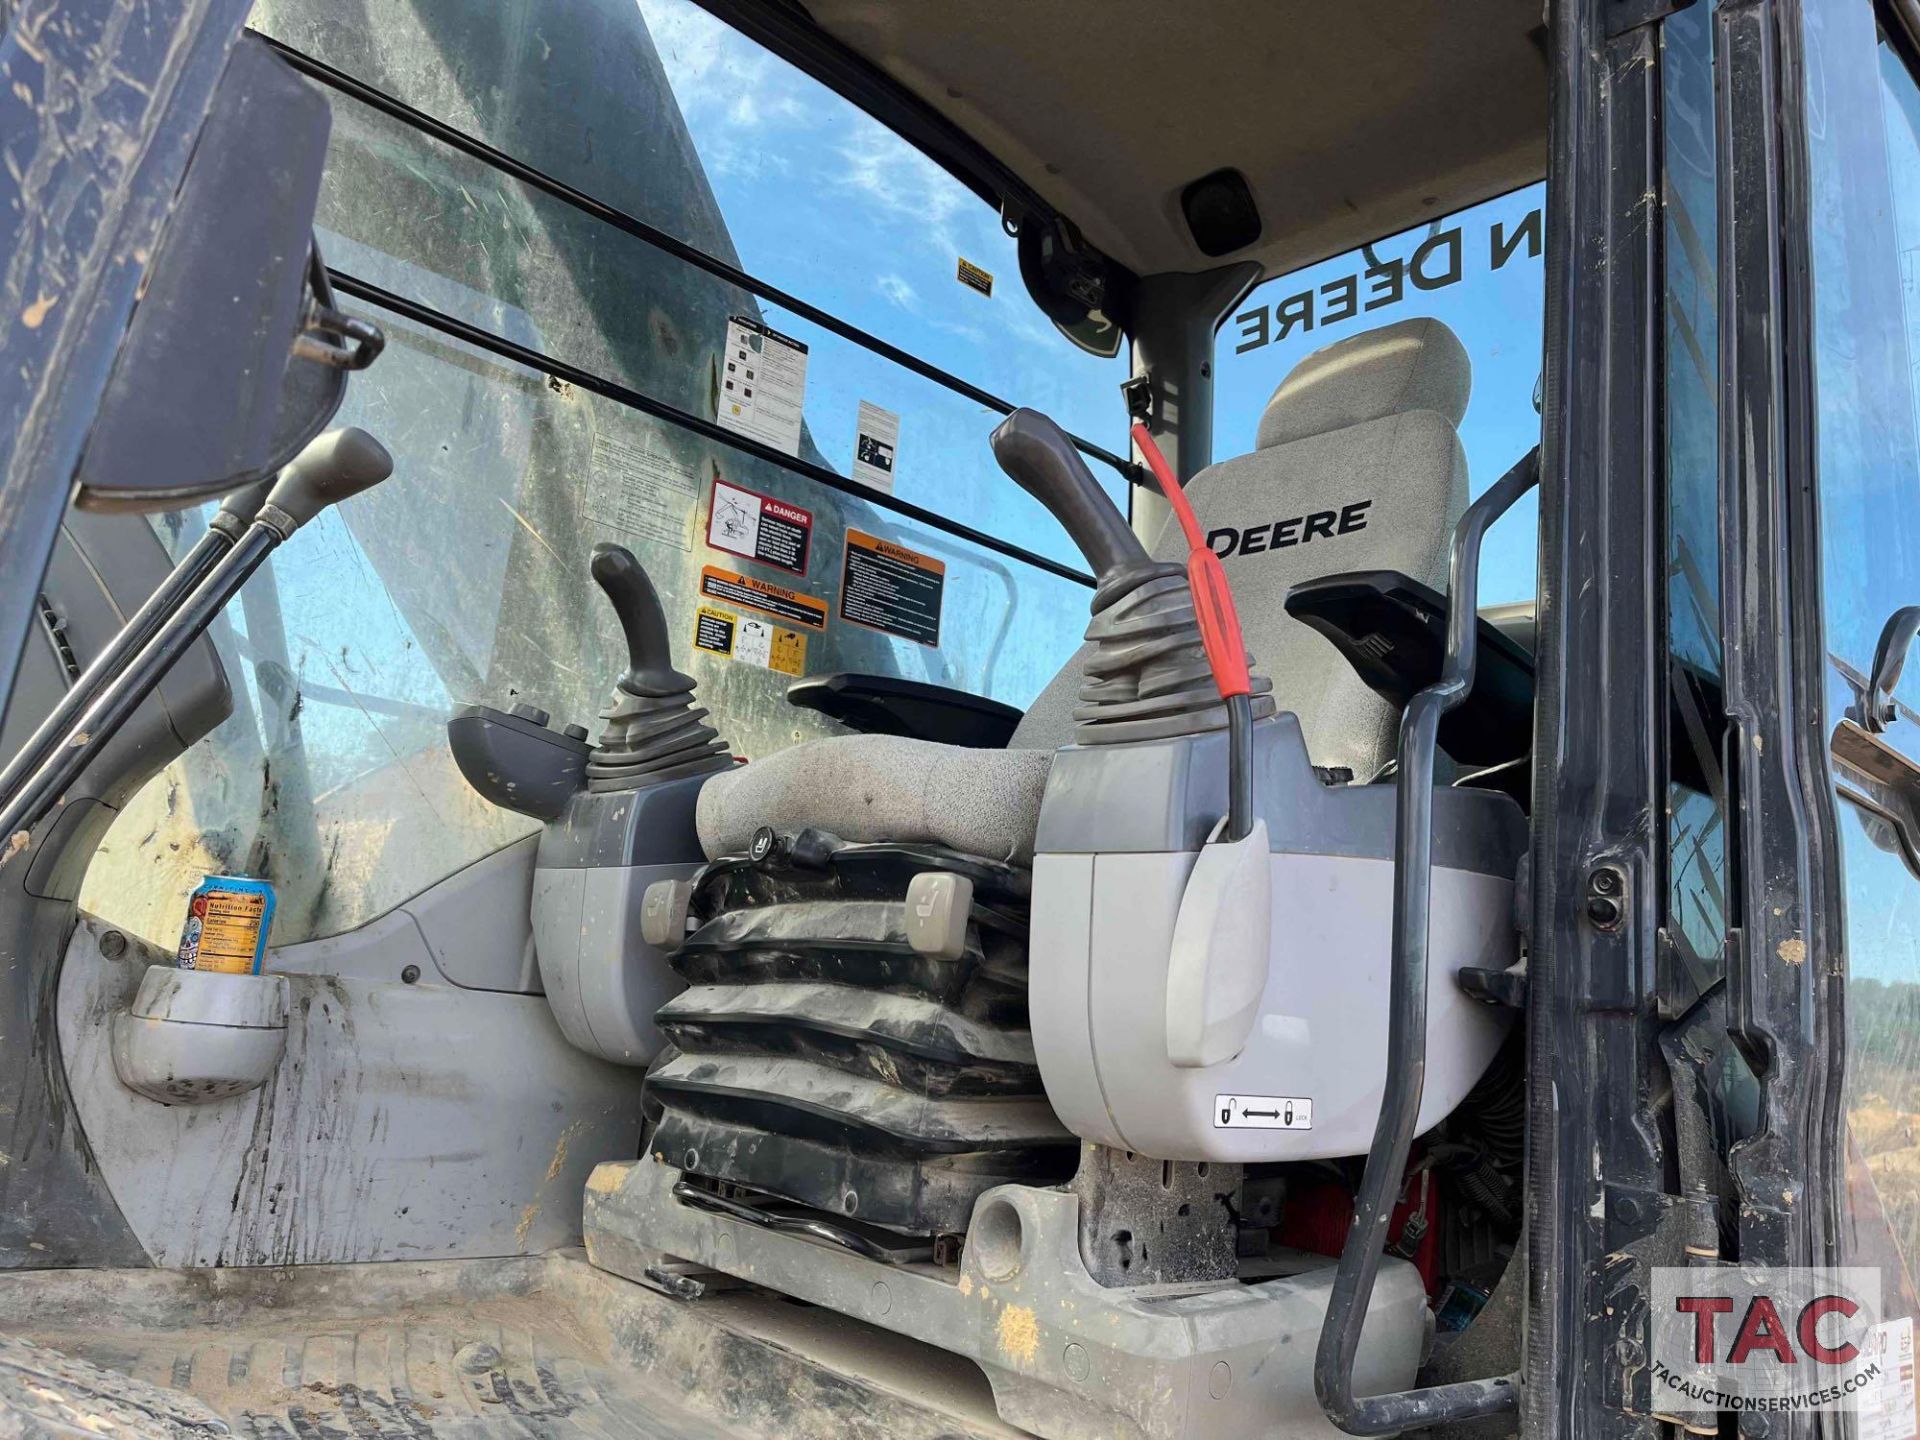 2018 John Deere 350G LC Excavator - Image 37 of 66